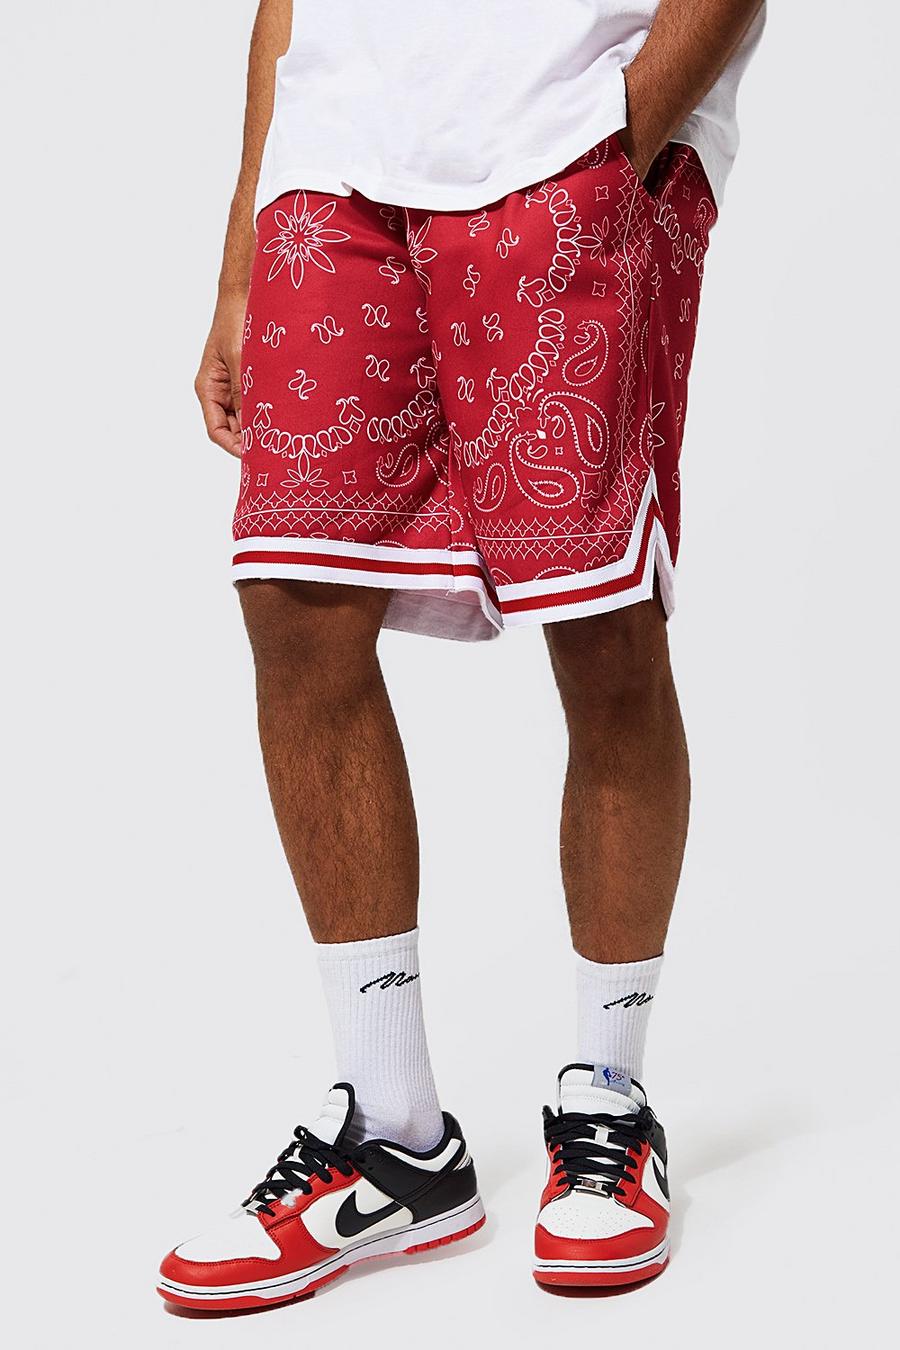 Basketball-Shorts mit Bandana-Print und Streifen, Red rot